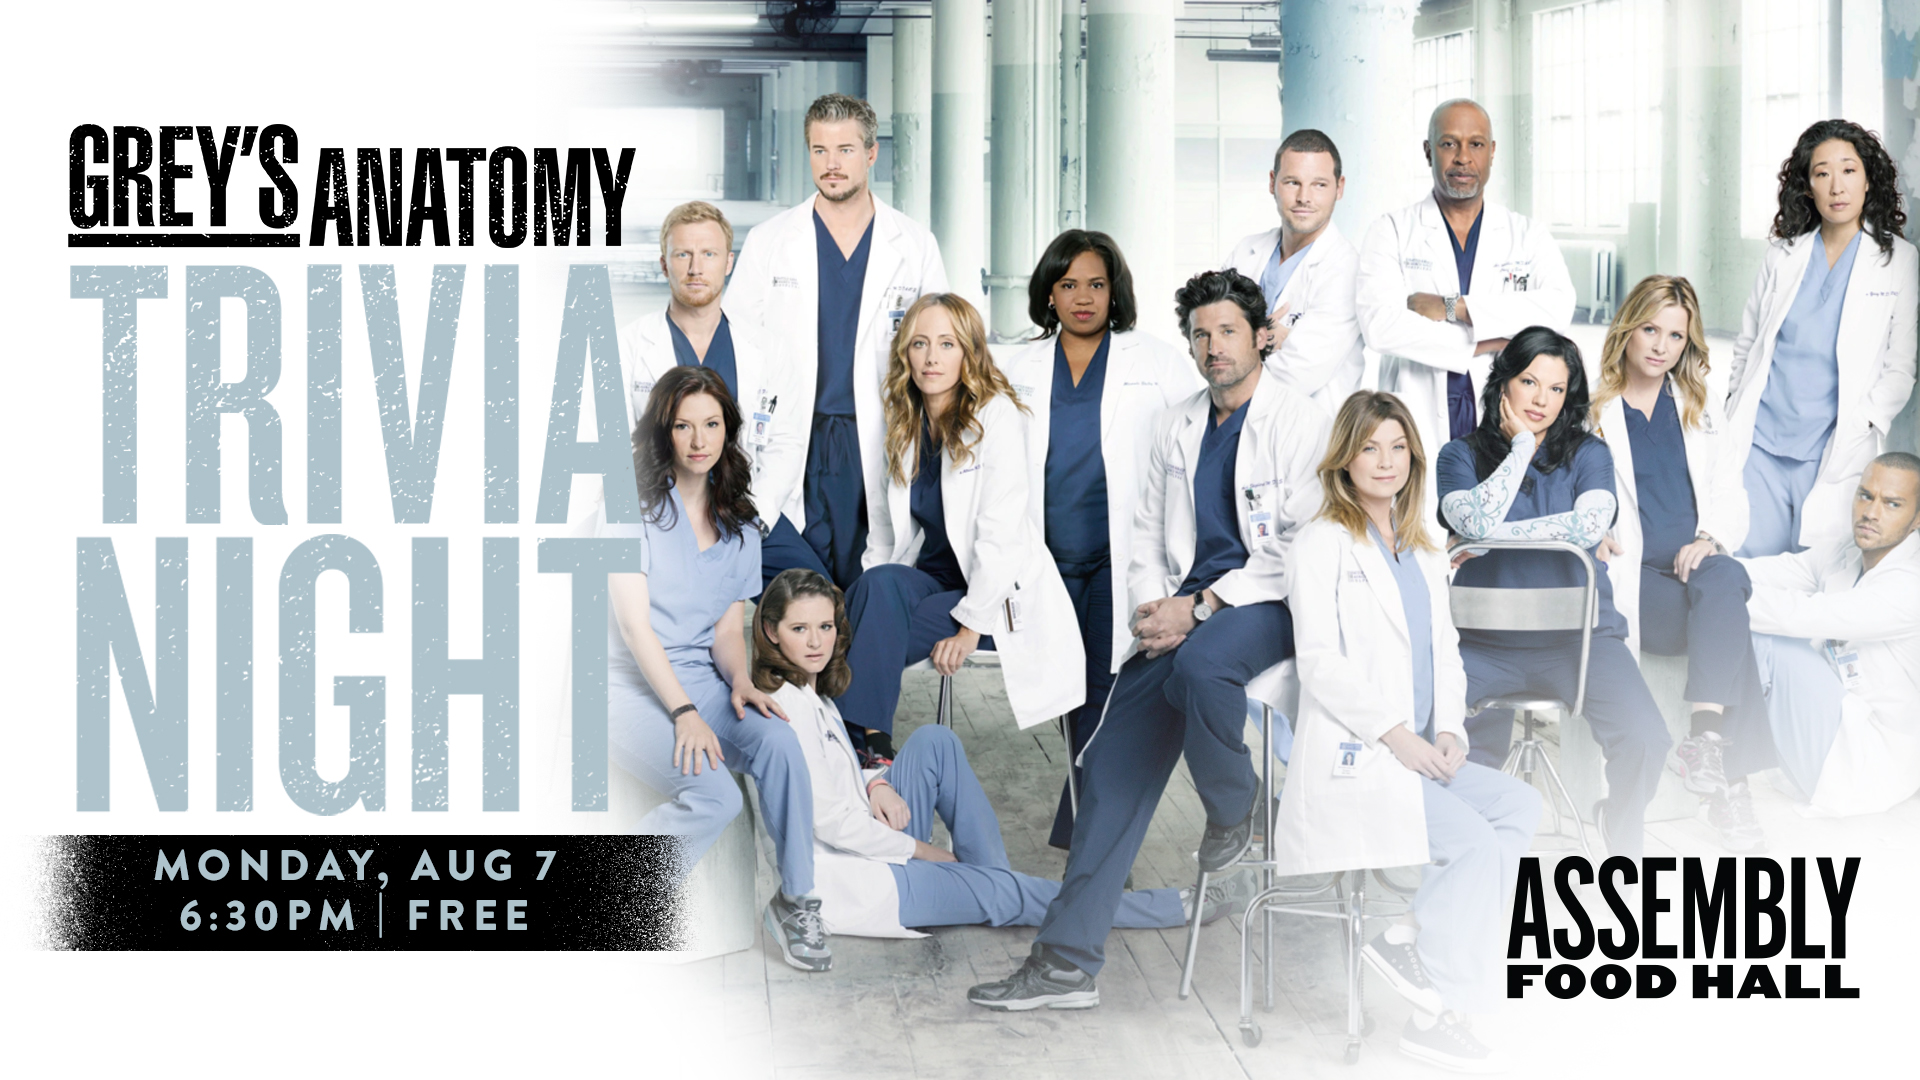 Promo image of Grey’s Anatomy Trivia Night